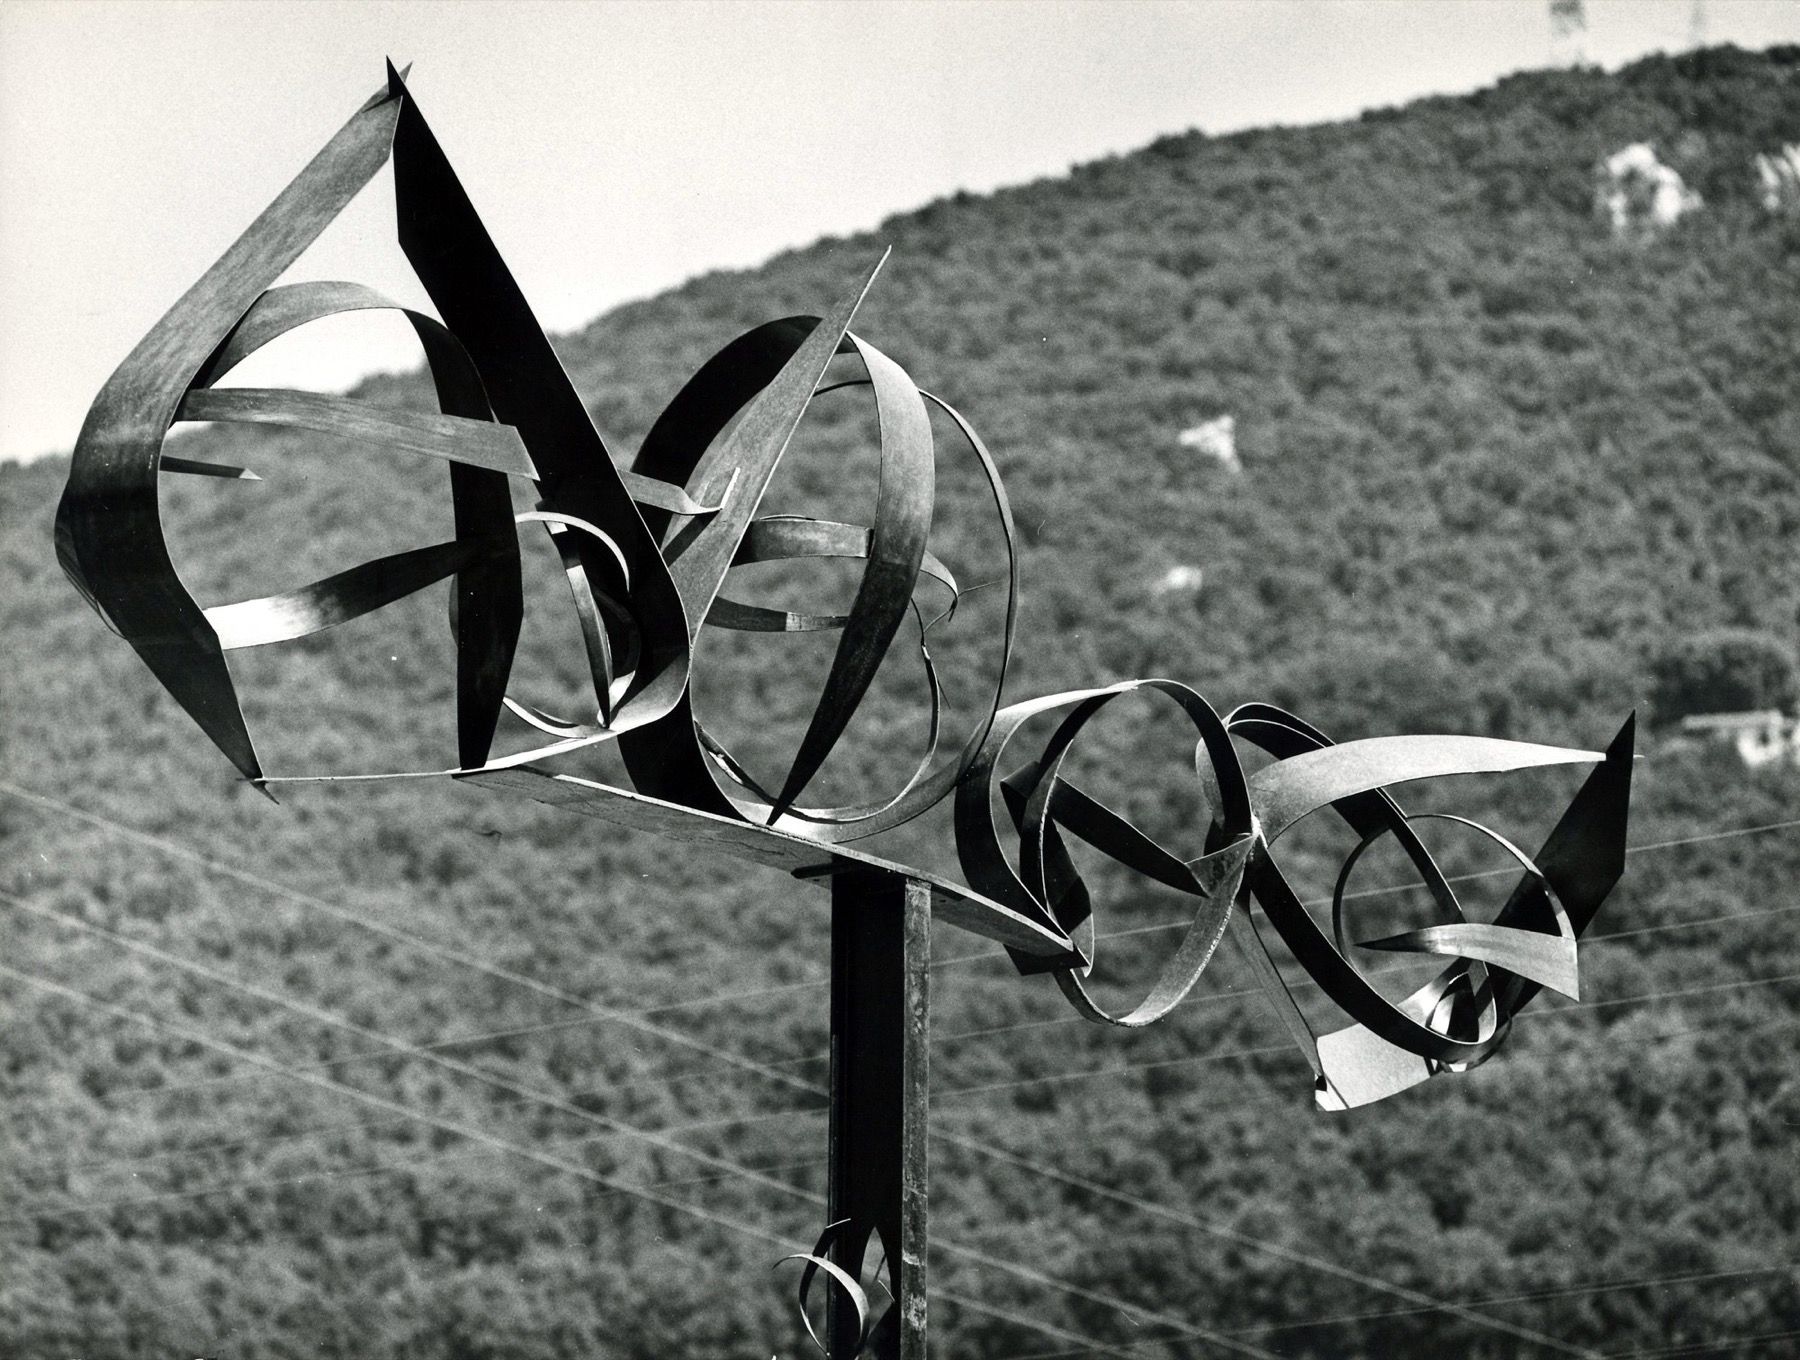 UGO MULAS 斯波莱托，"伊卡洛斯的礼物"，贝弗利-佩珀，1962年

复古明胶银印刷品
11.4 x 15.3 in.
背面有摄影师的信用印章
本拍品受&hellip;